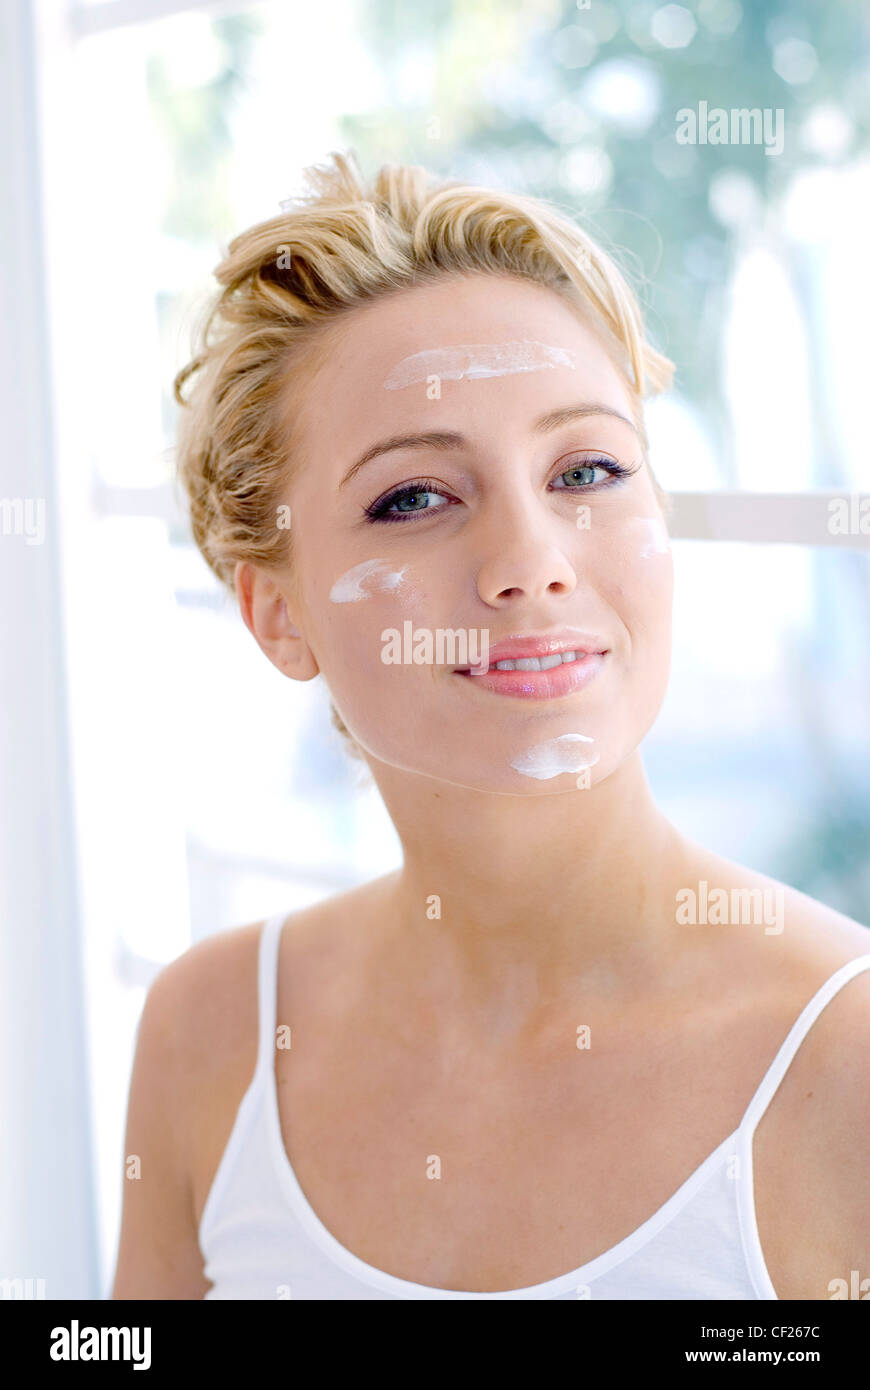 Donna capelli biondi indossa canottiera bianca blob di crema sulla fronte le guance e mento cercando di fotocamera a sorridere mostrando i denti Foto Stock